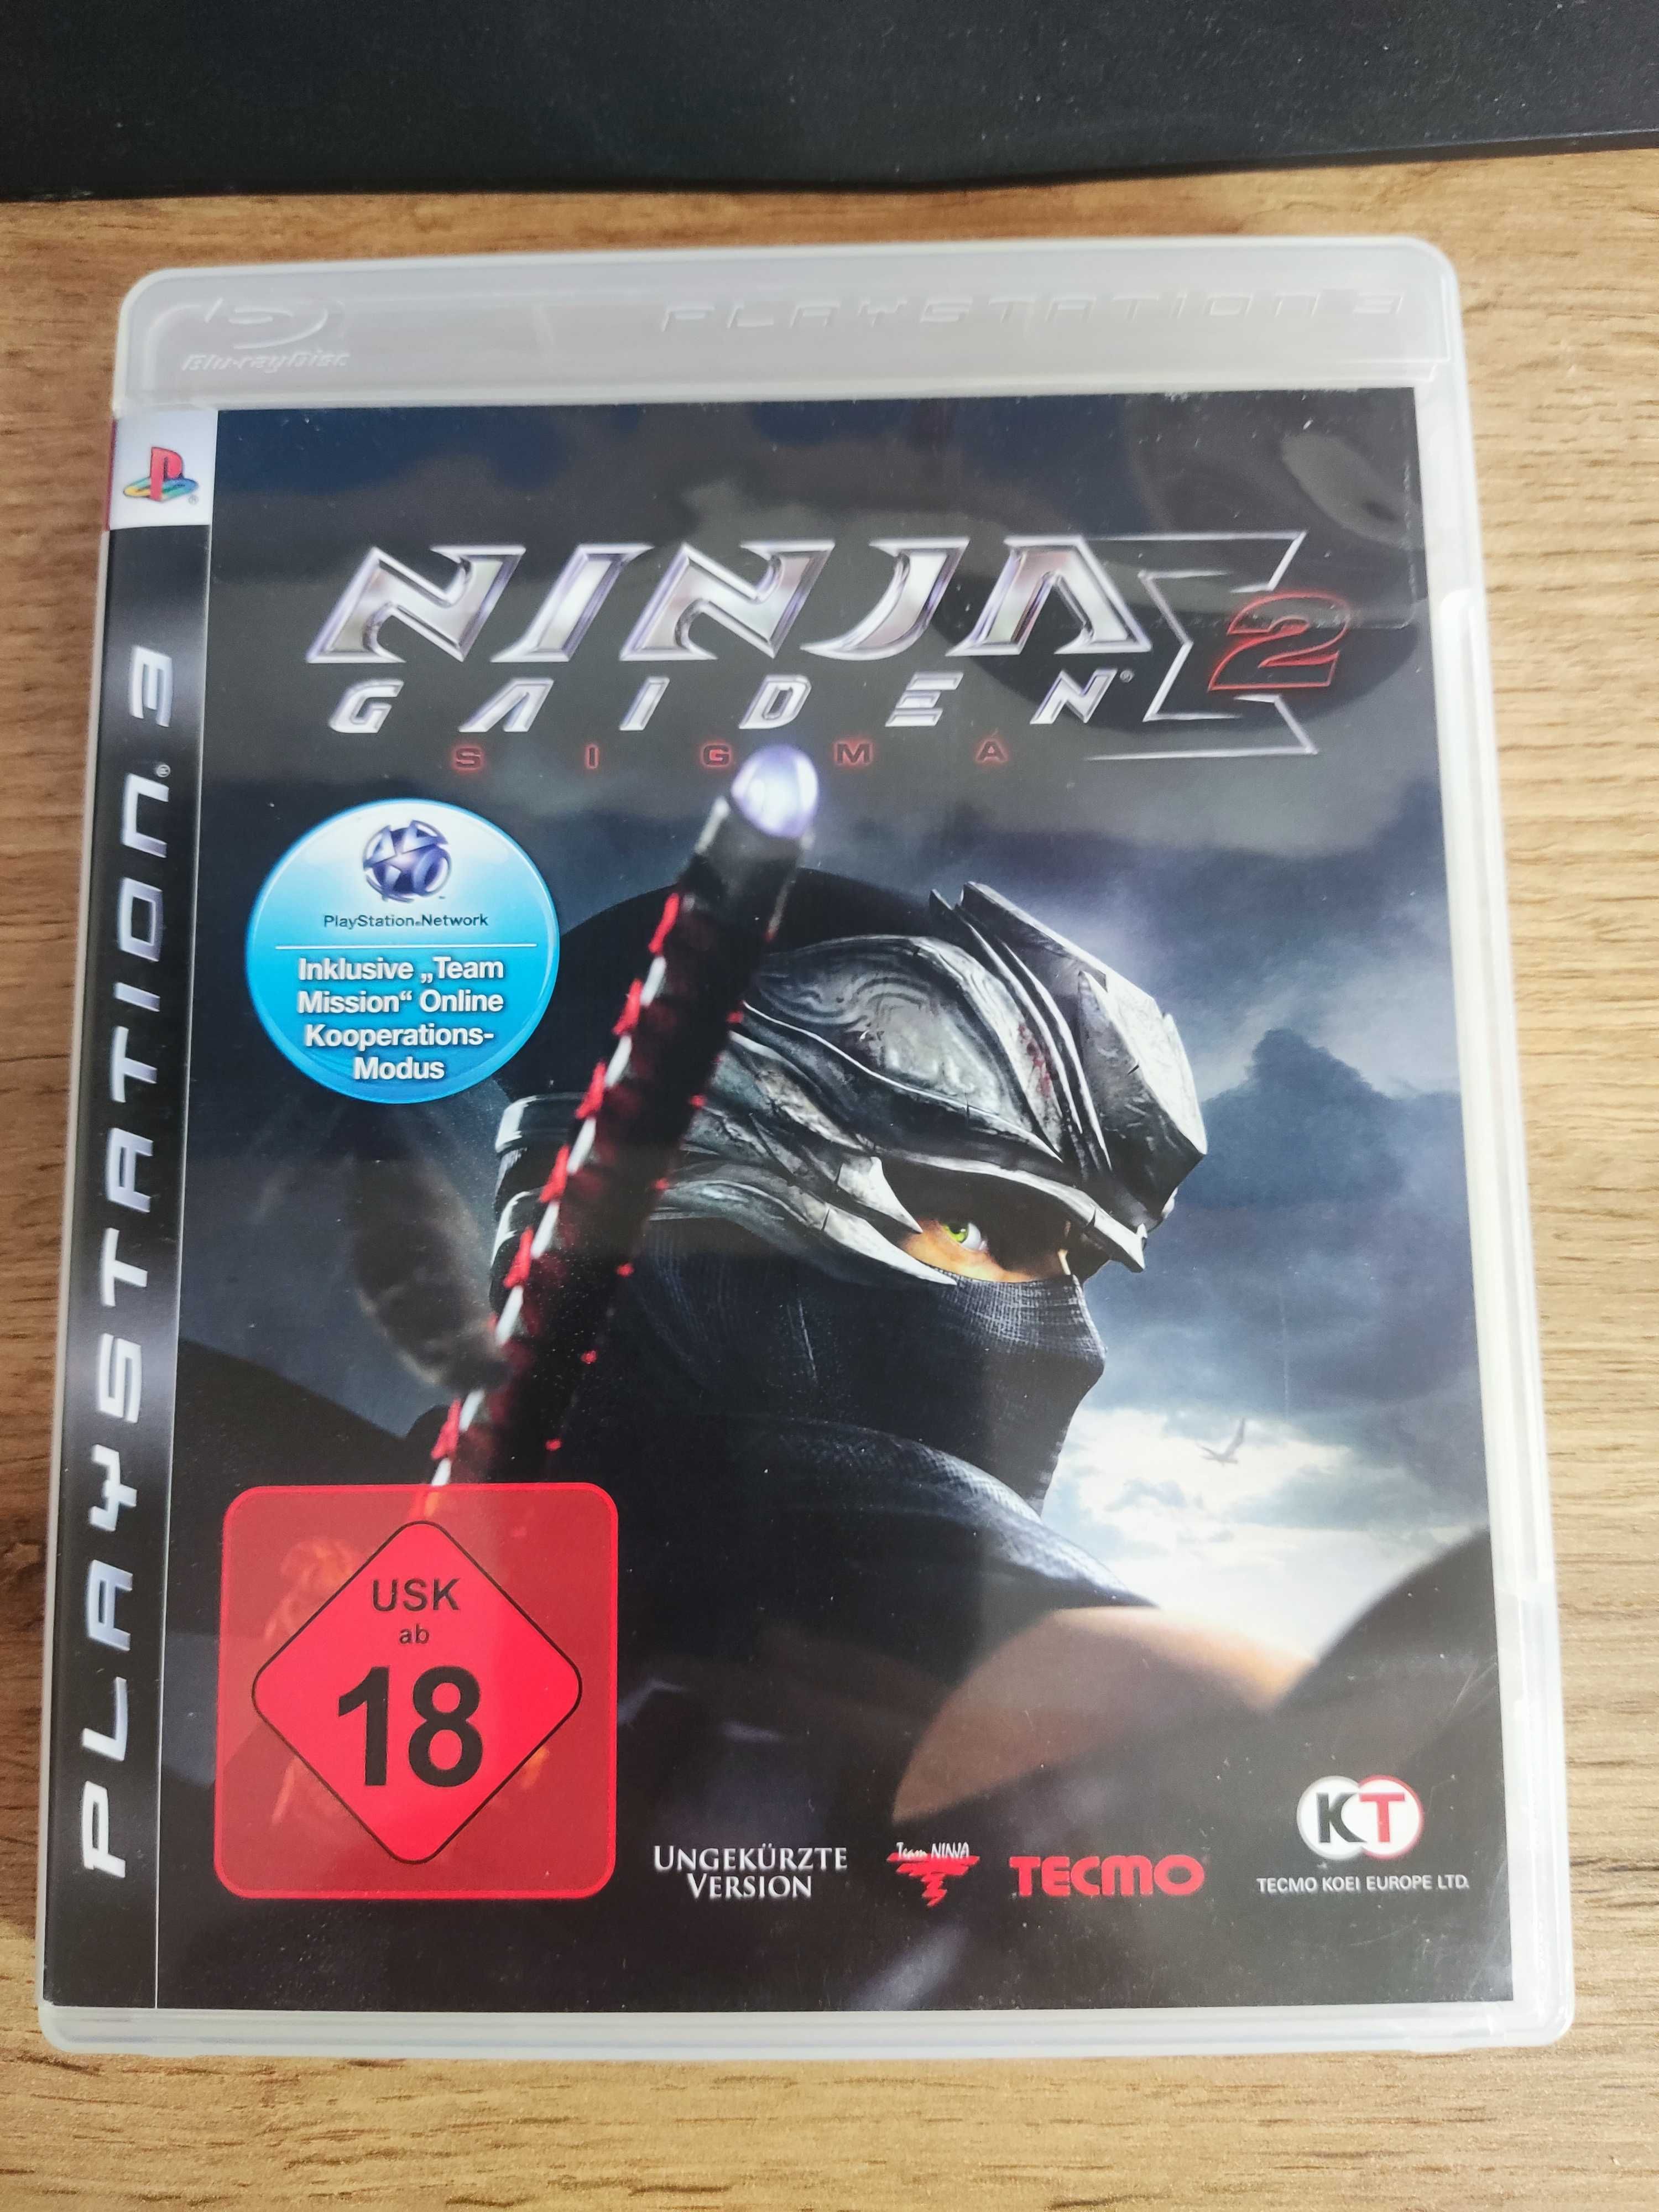 Ninja Gaiden Sigma 2 Playstation 3 PS3